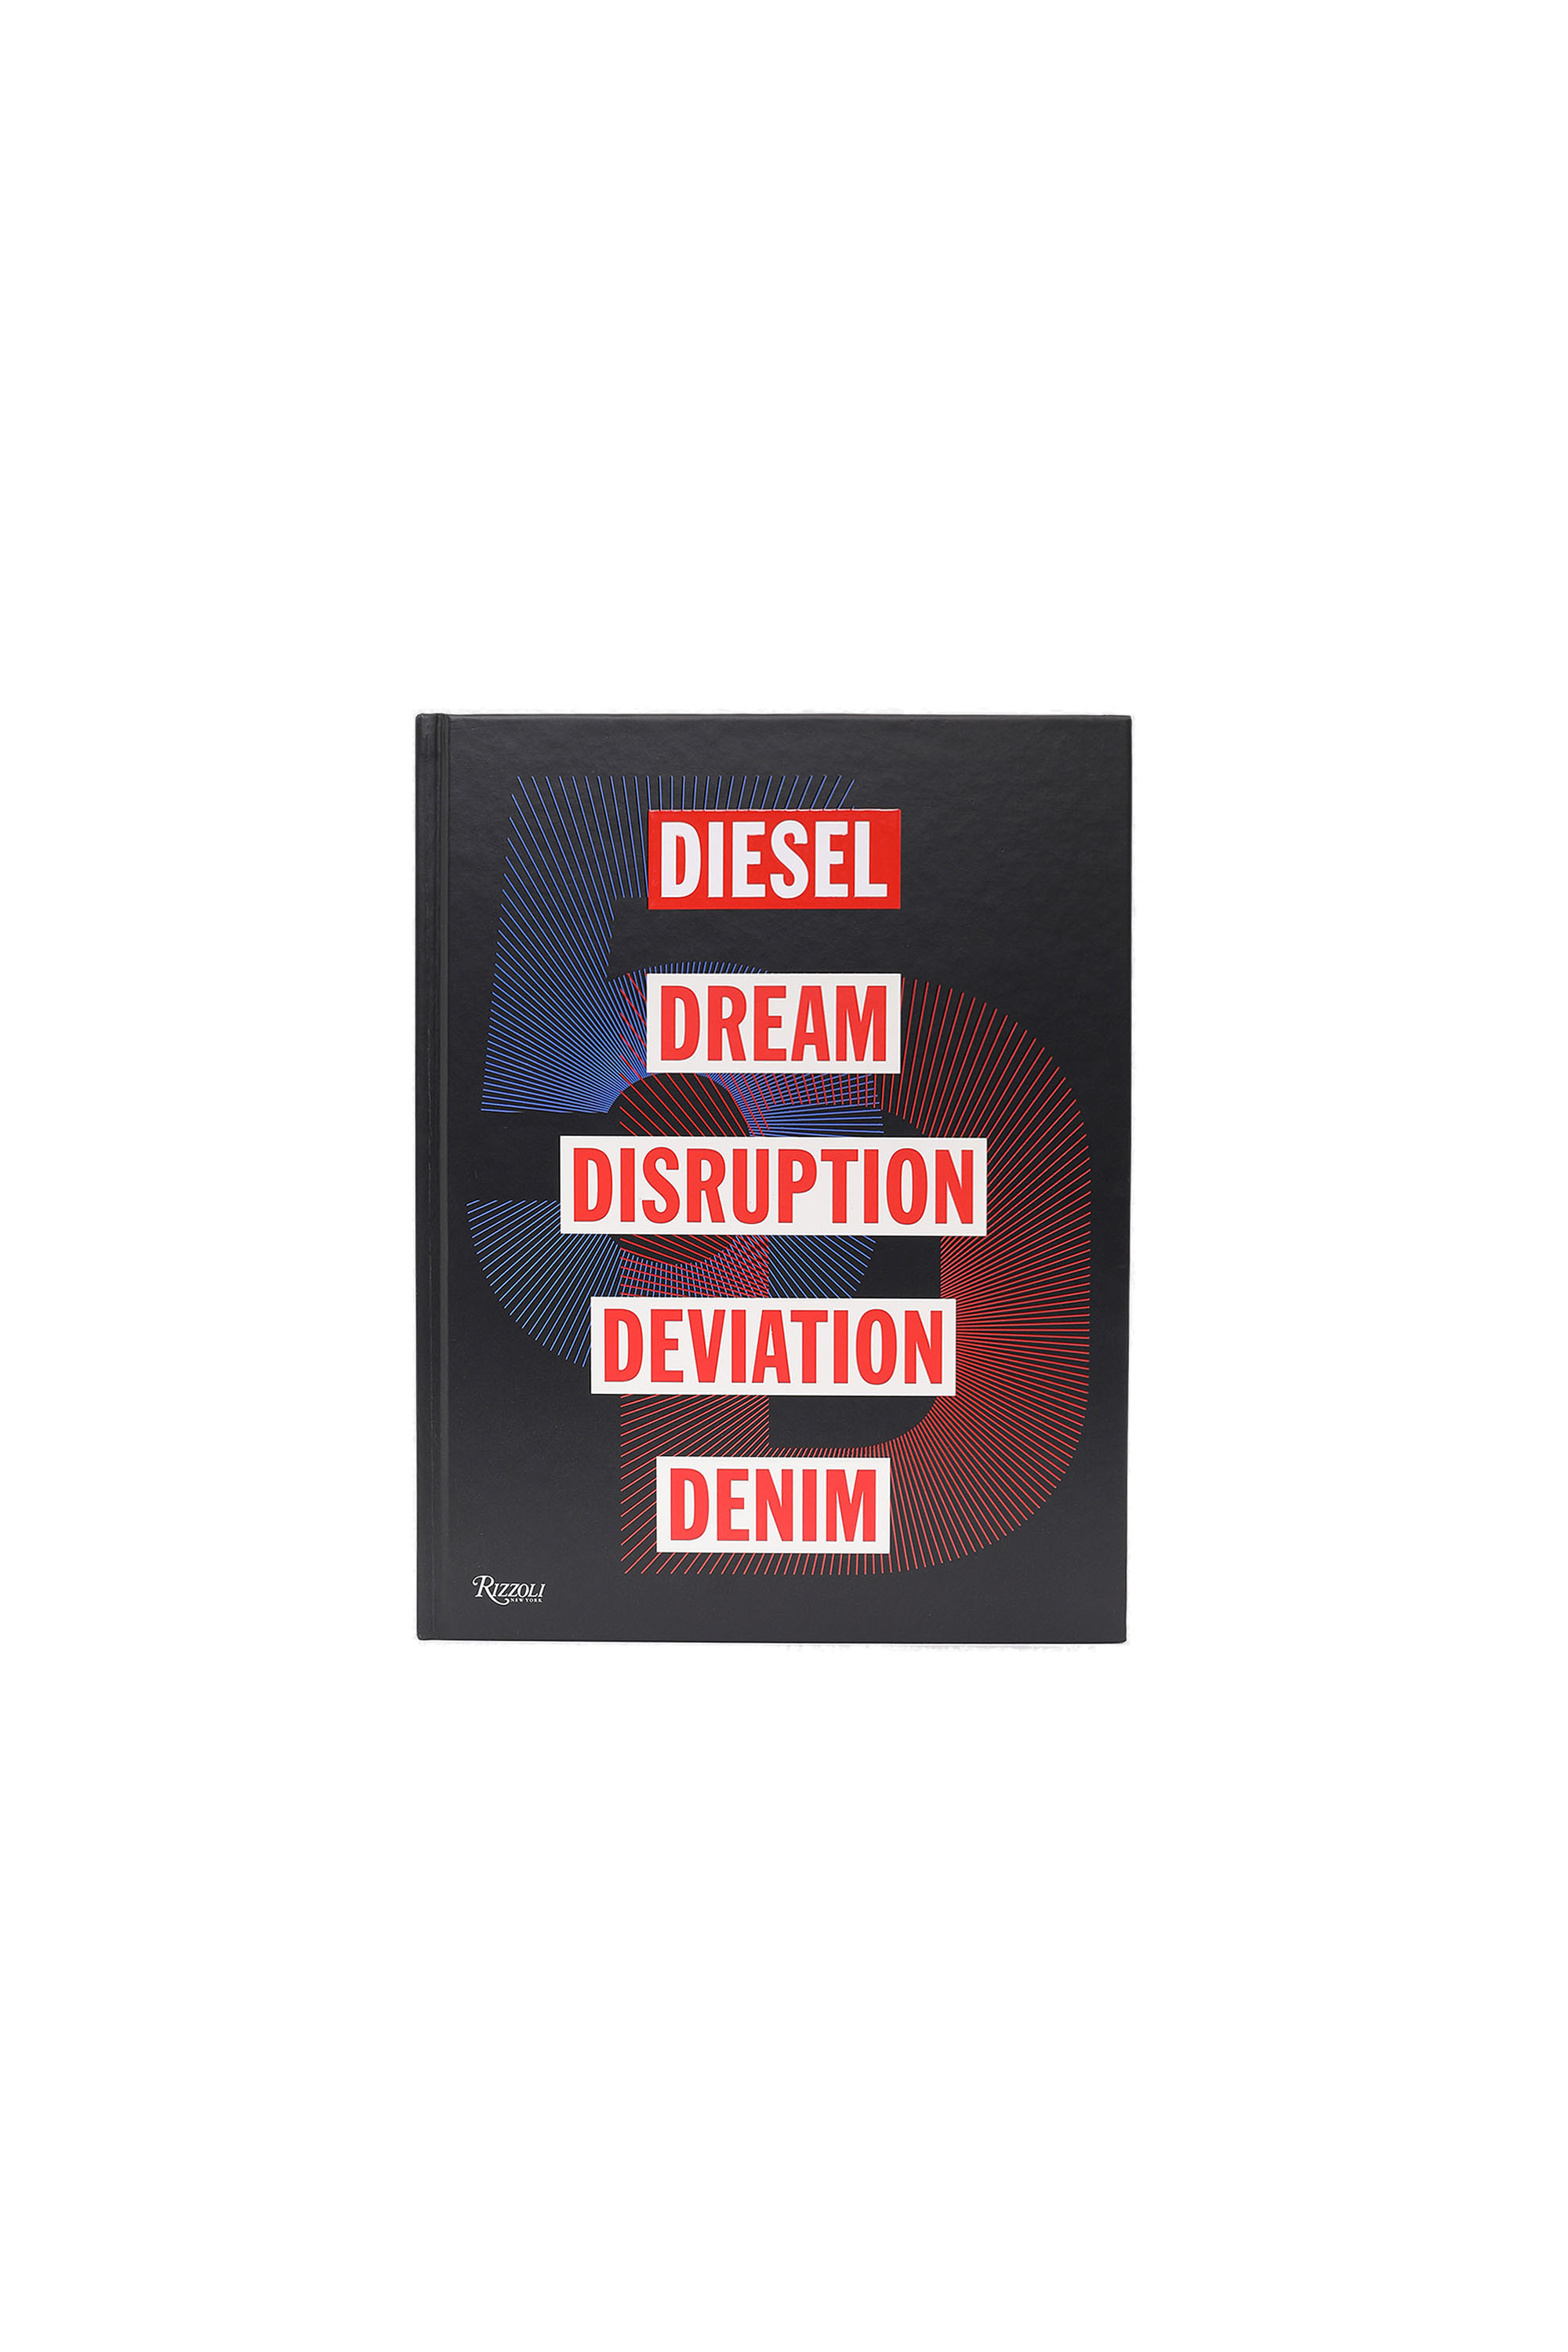 5D Diesel Dream Disruption Deviation Denim, Black - Books